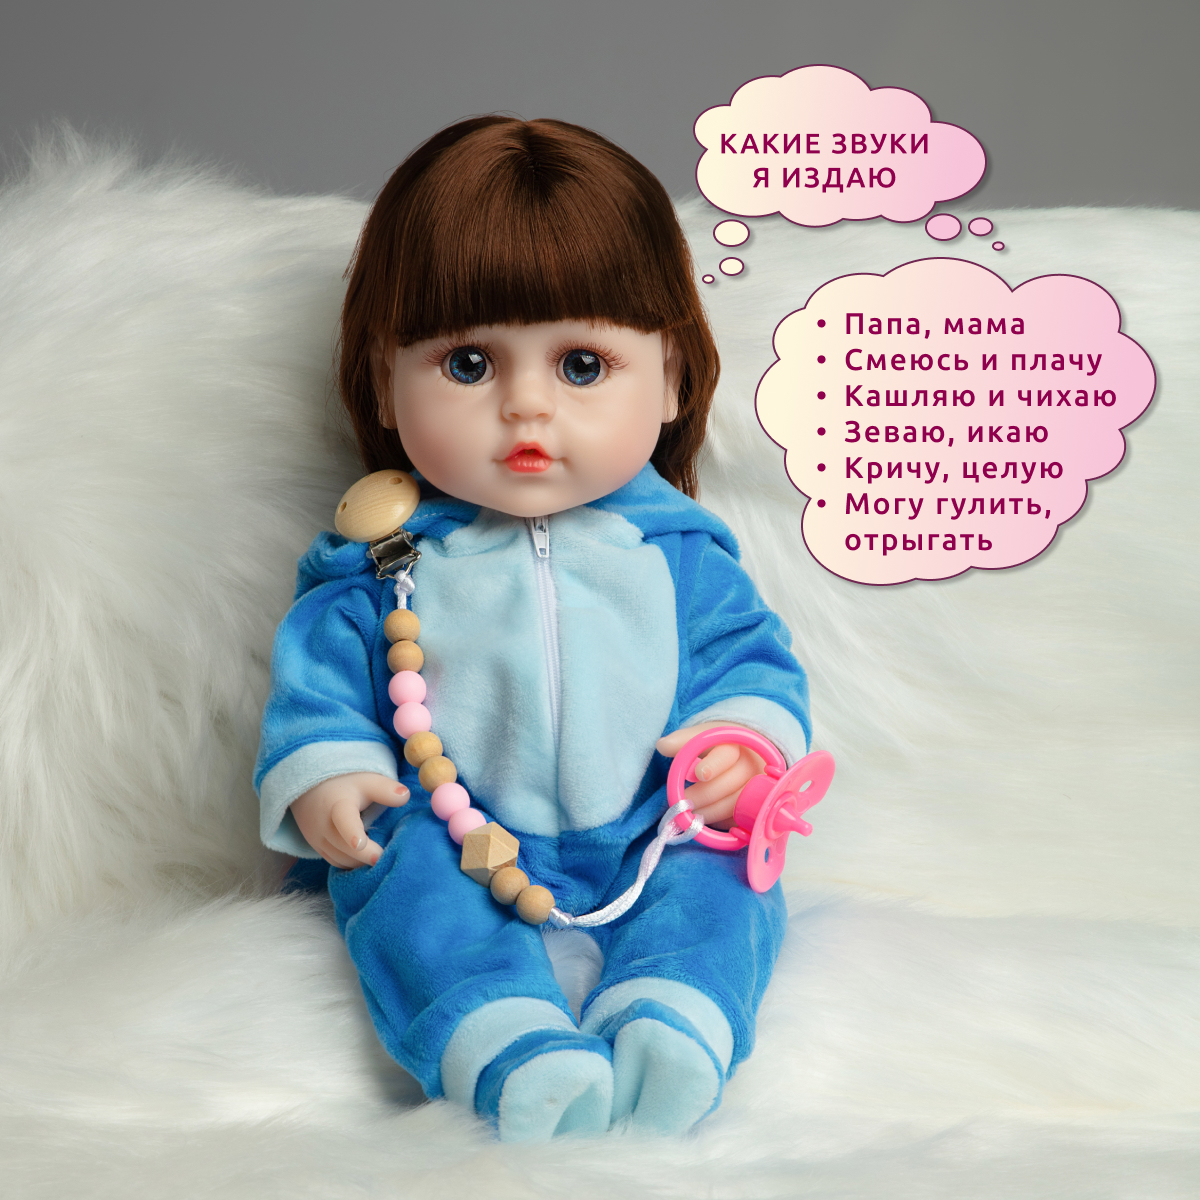 Кукла Реборн QA BABY Кэндис девочка интерактивная Пупс набор игрушки для ванной для девочки 38 см 3811 - фото 3